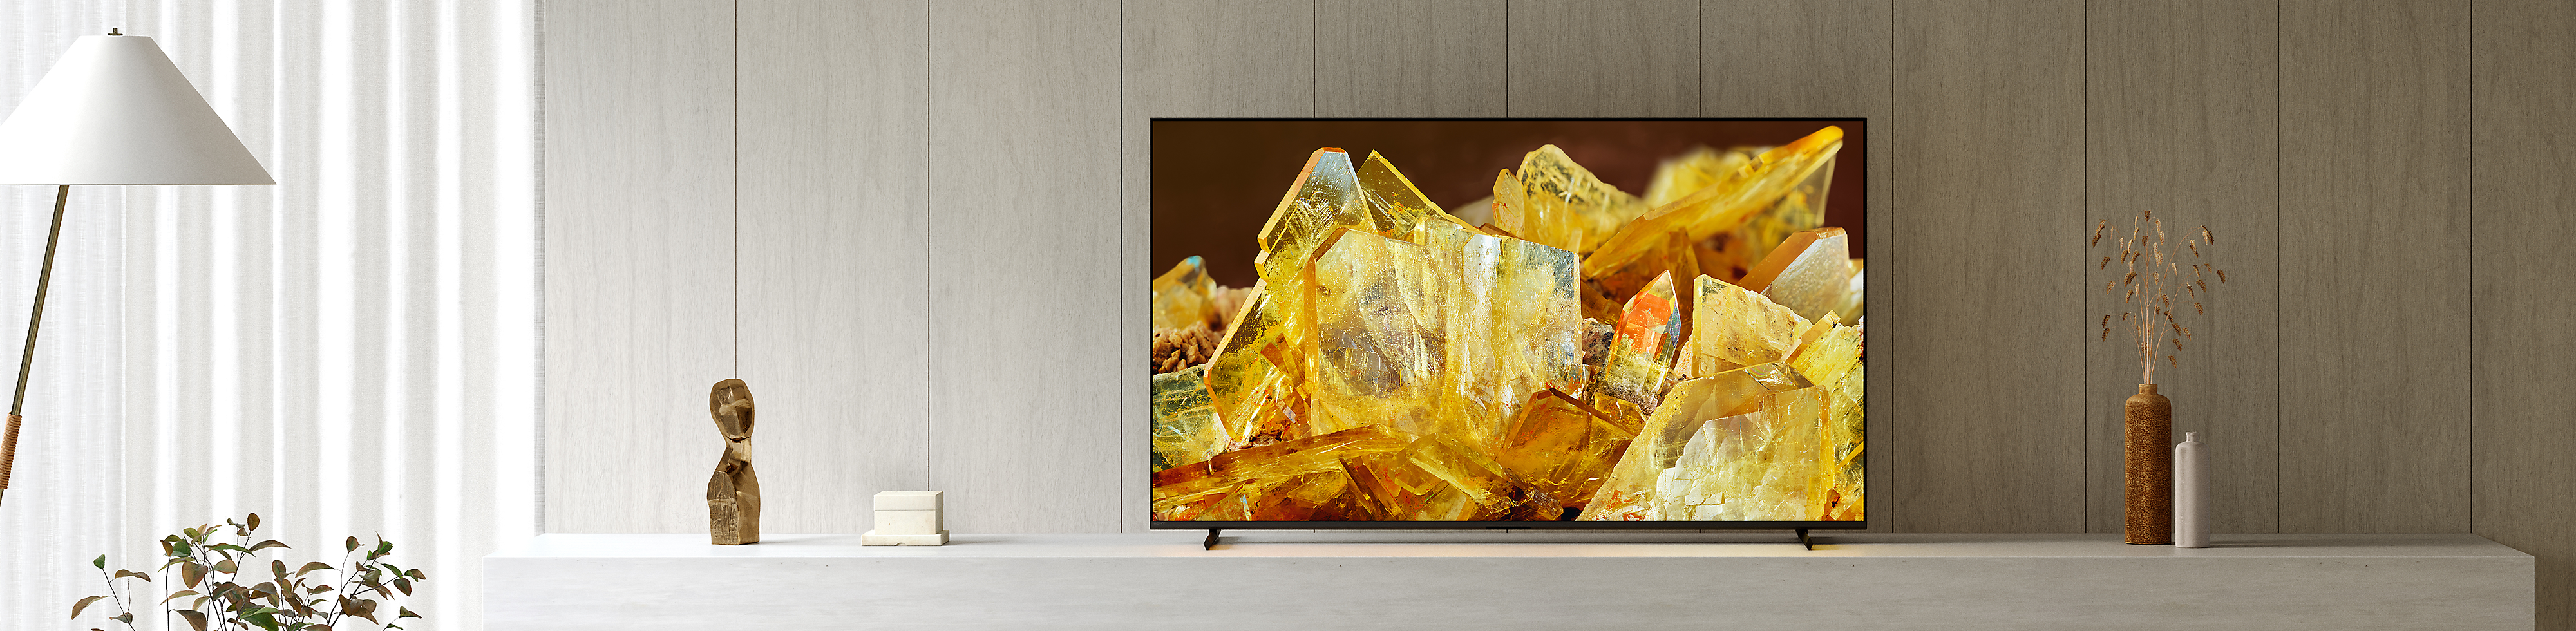 BRAVIA XR -televisio olohuoneessa, kuvaruudussa on lähikuva kellertävistä kristalleista